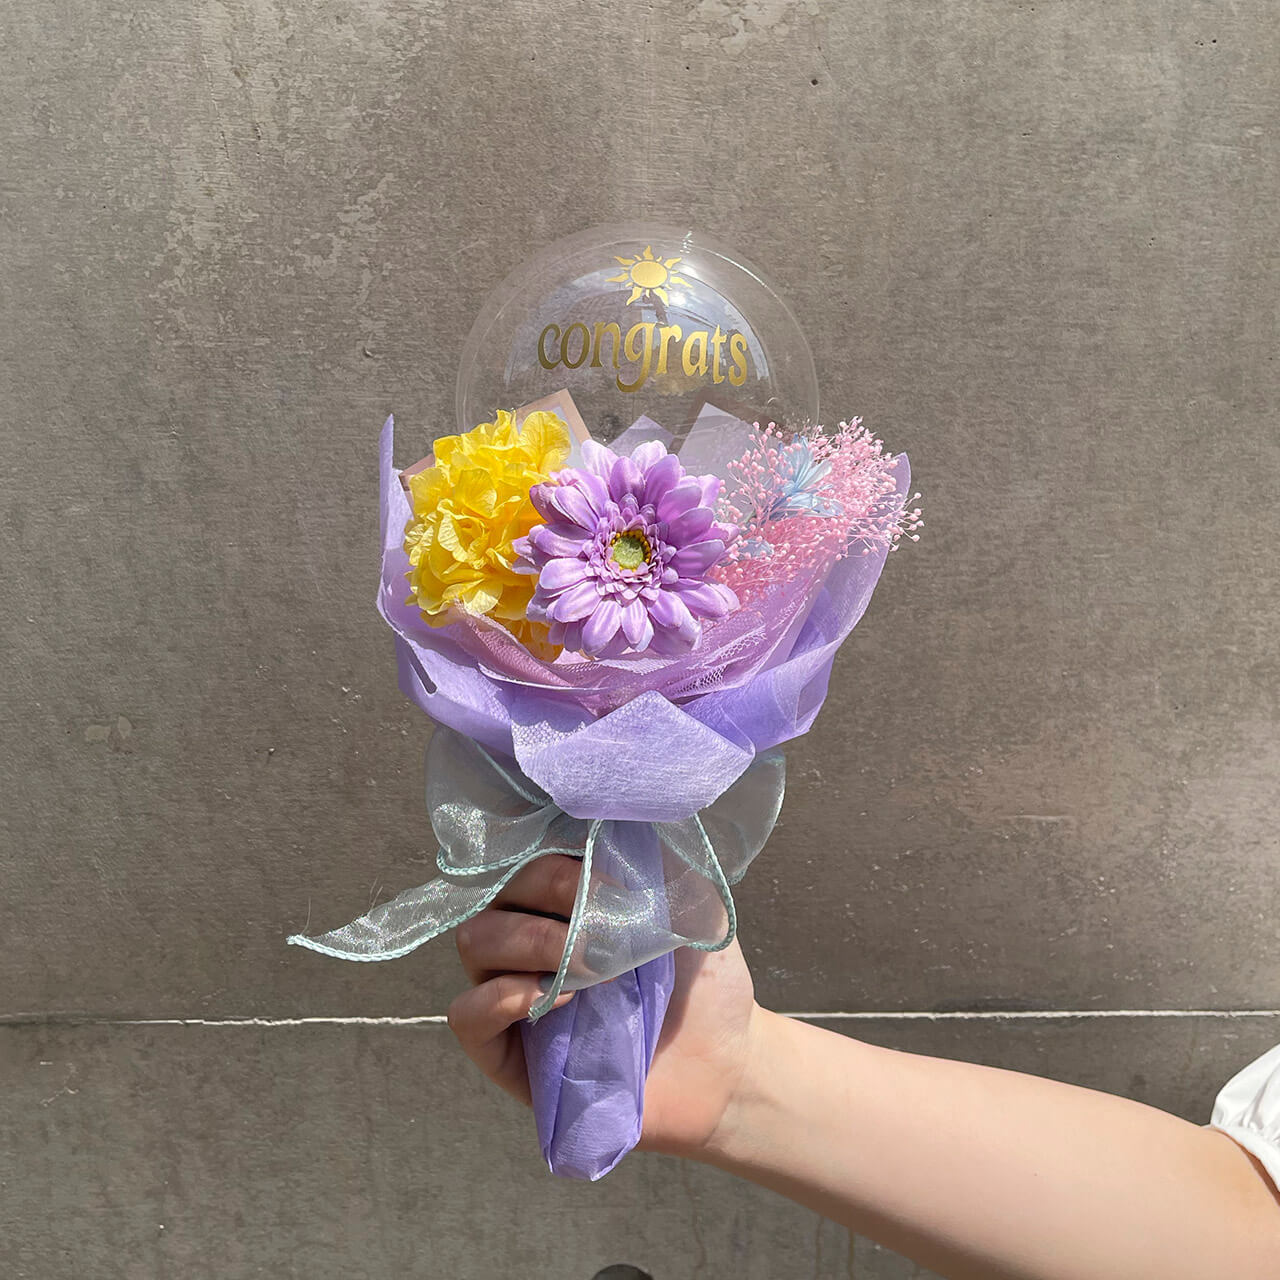 Balloon Flower Bouquet Mini Rapunzel ラプンツェルモデル 大阪 心斎橋 堀江のバルーンとお花を使ったおしゃれな花束バルーンショップ Saguaro Balloon